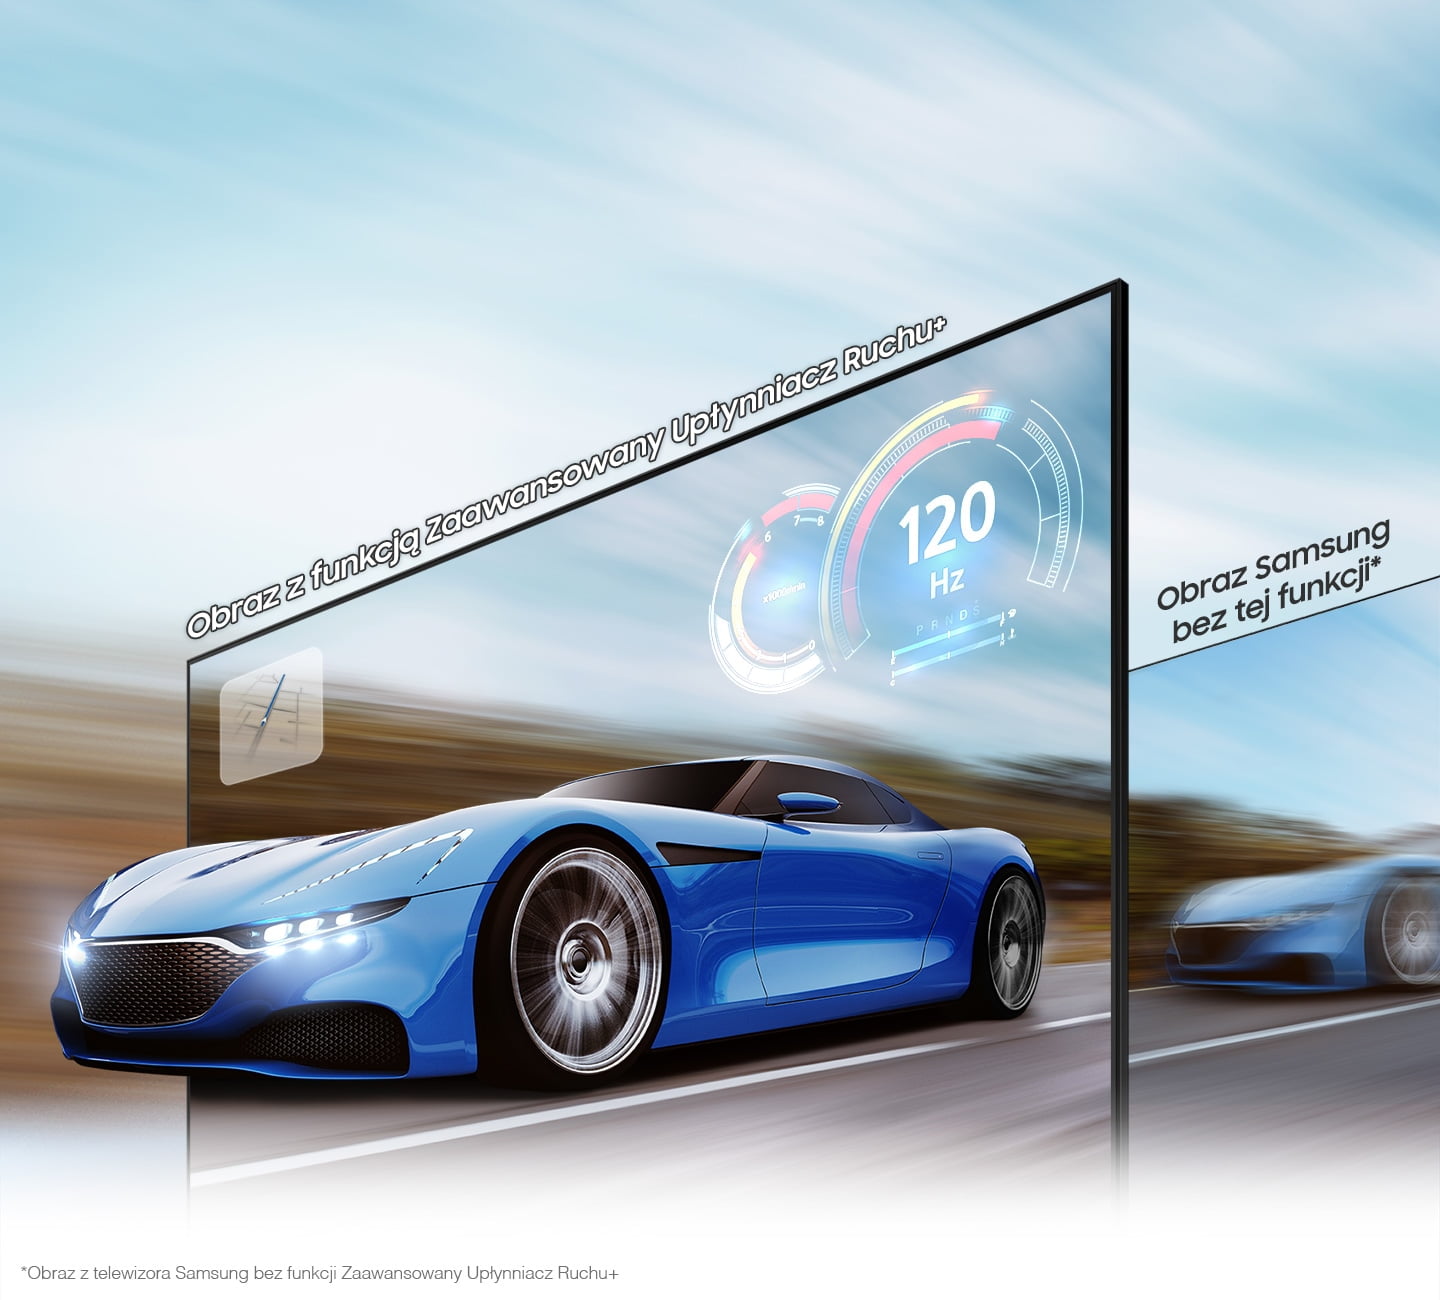 Zaawansowany Upłynniacz Ruchu do 120 Hz w telewizorze Samsung Neo QLED QN85A zadba o najwyższą dynamikę podczas wydarzeń sportowych czy rozgrywek gamingowych